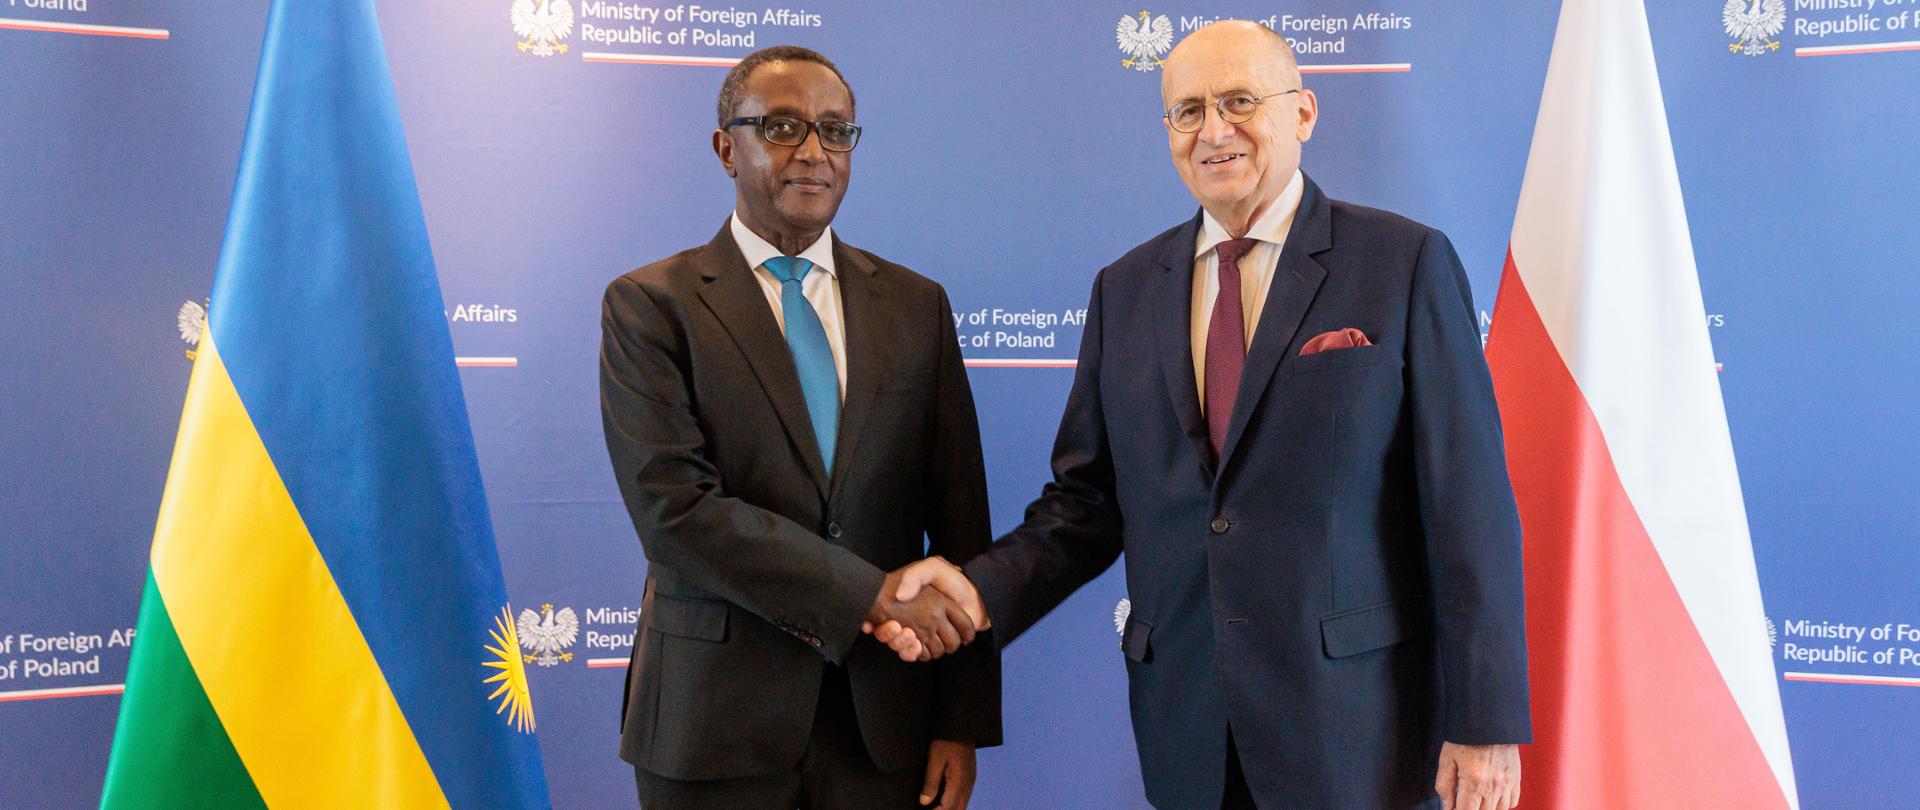 Spotkanie szefów dyplomacji Polski i Rwandy